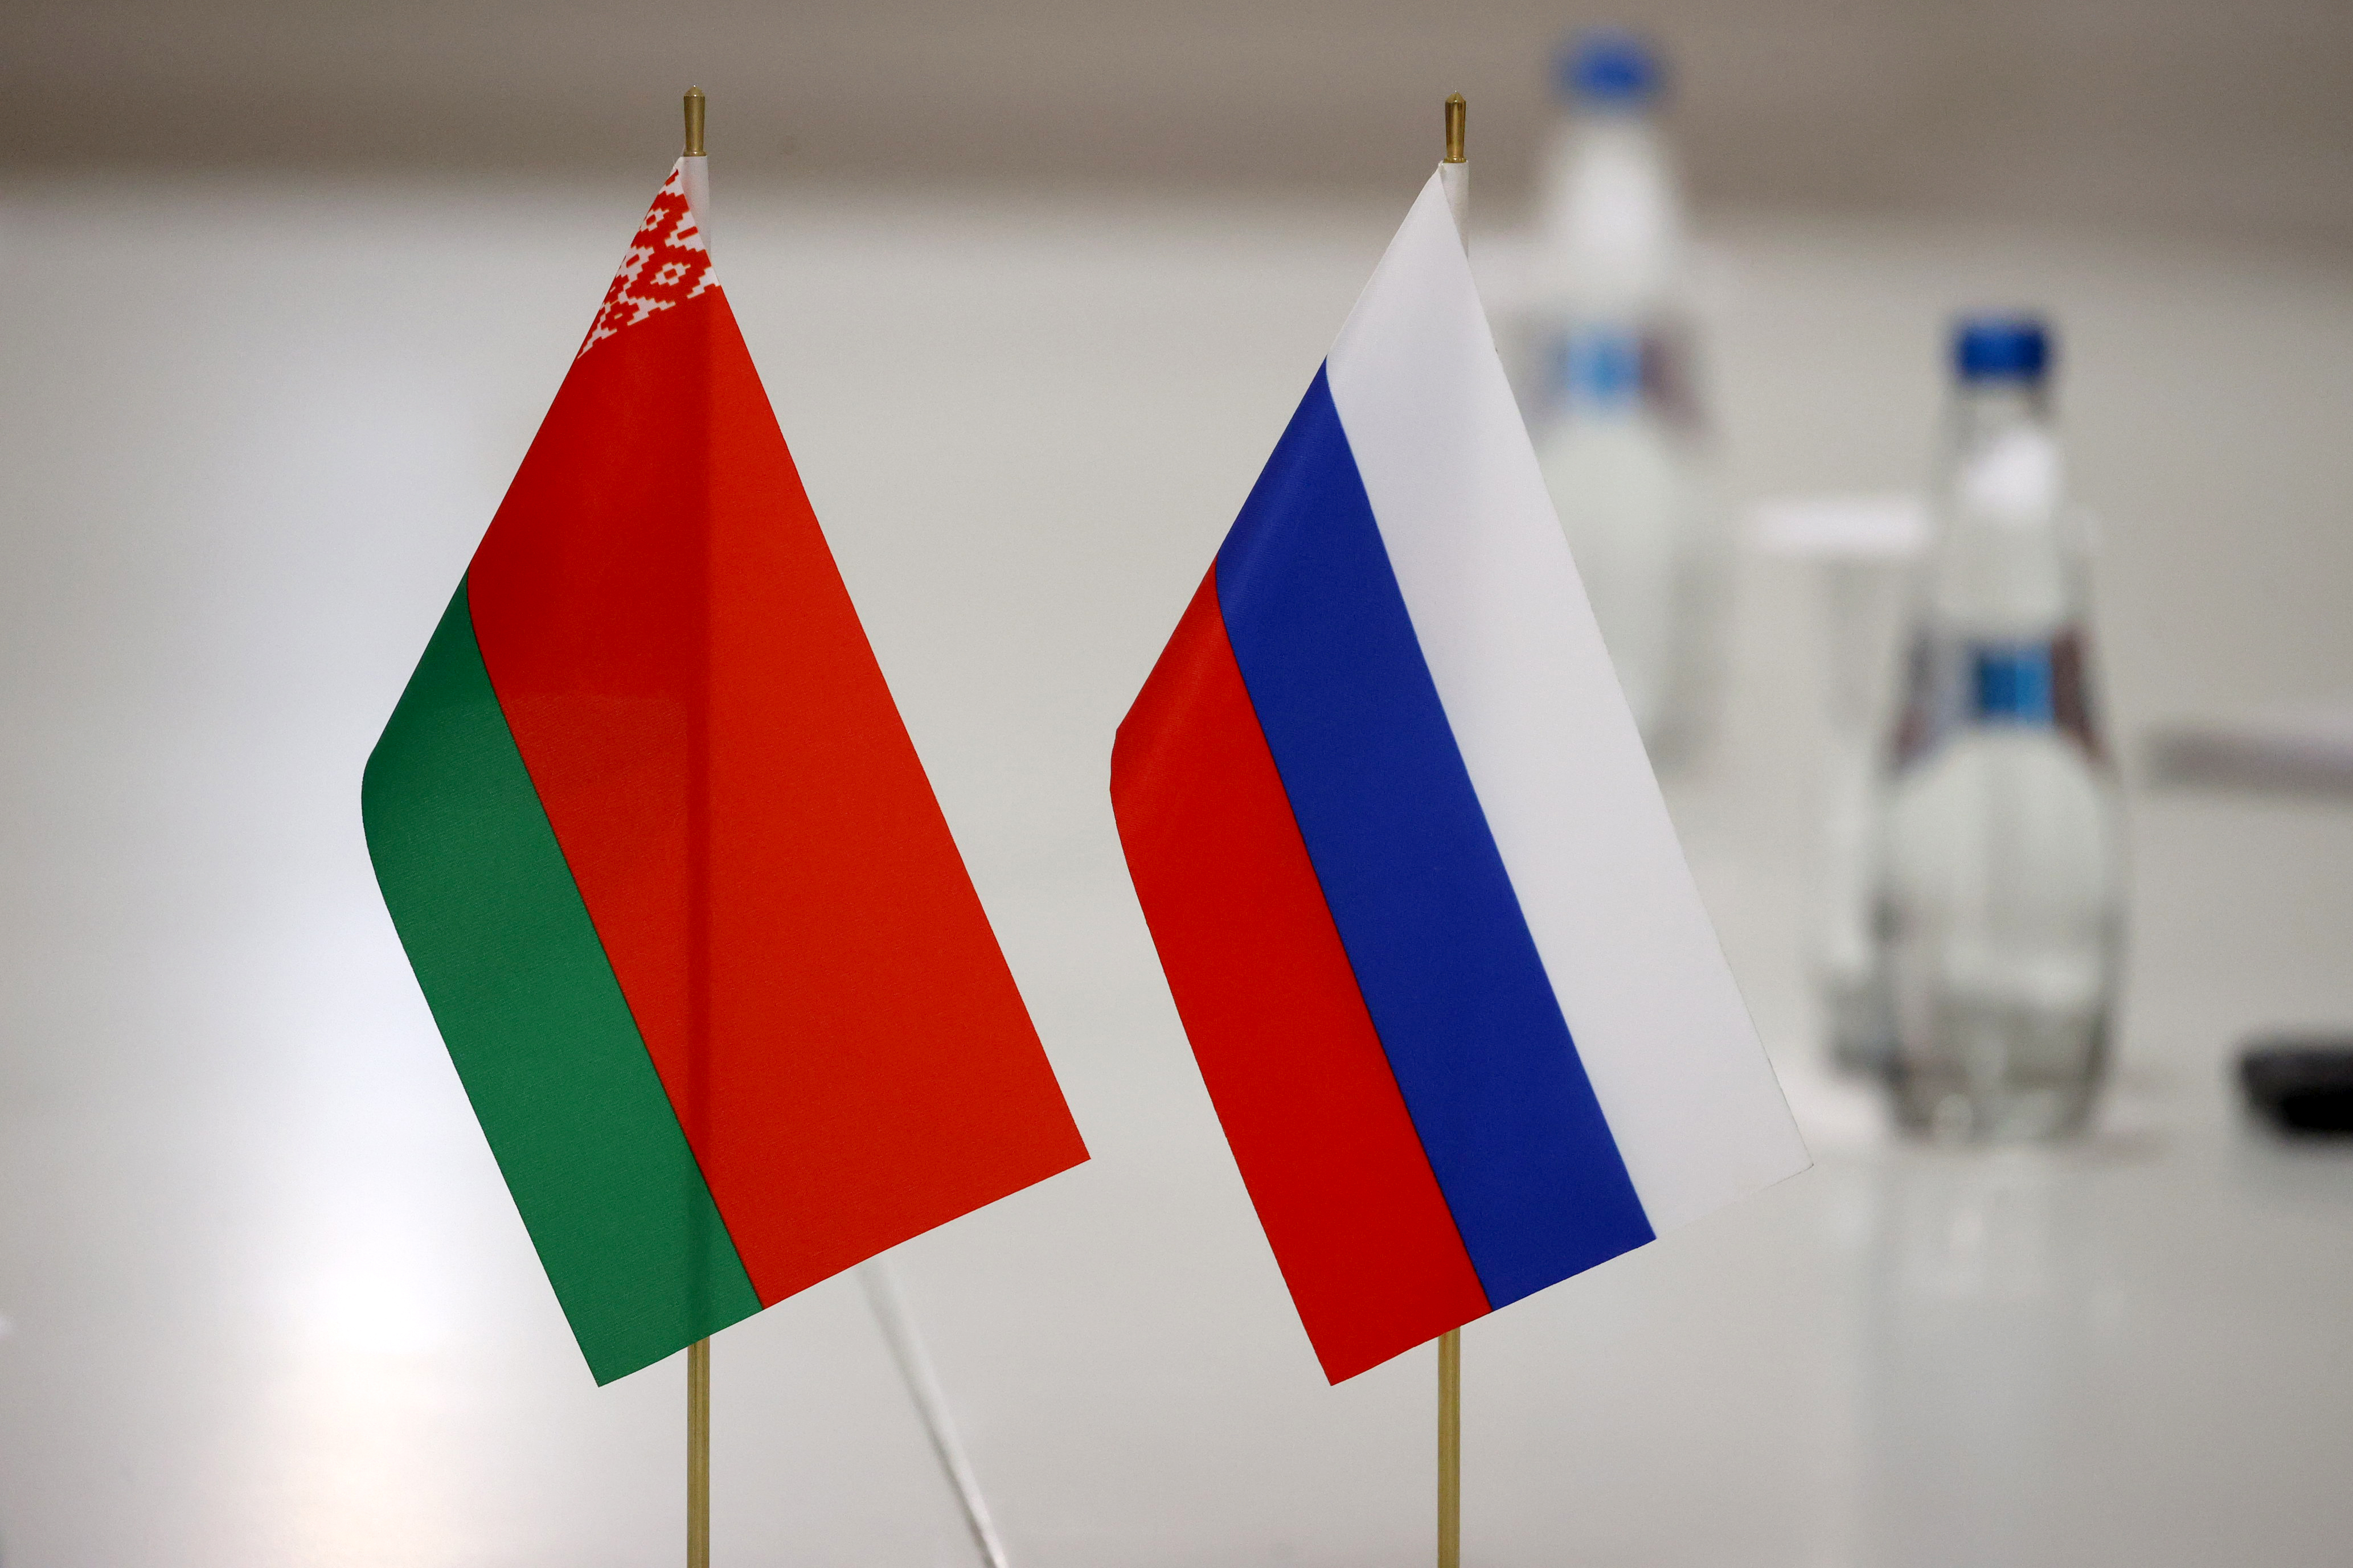 Двусторонние отношения РФ и Беларуси – образцовые, заимствуют опыт друг друга